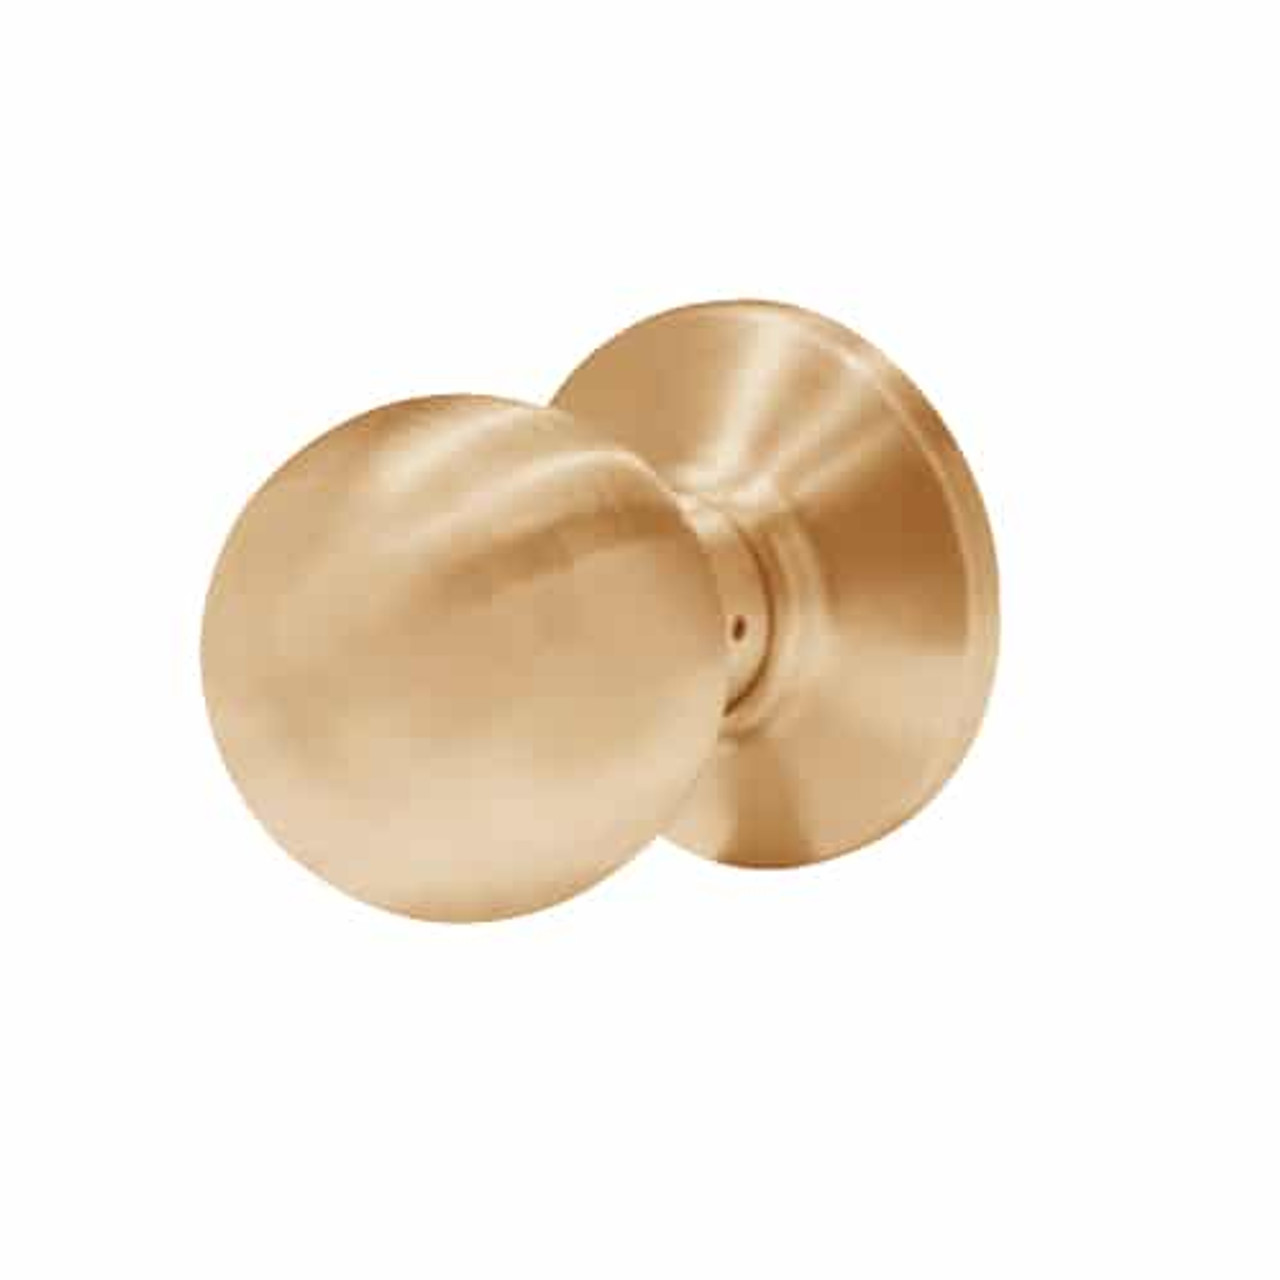 6K30N4CSTK611 Best 6K Series Passage Medium Duty Cylindrical Knob Locks with Round Style in Bright Bronze